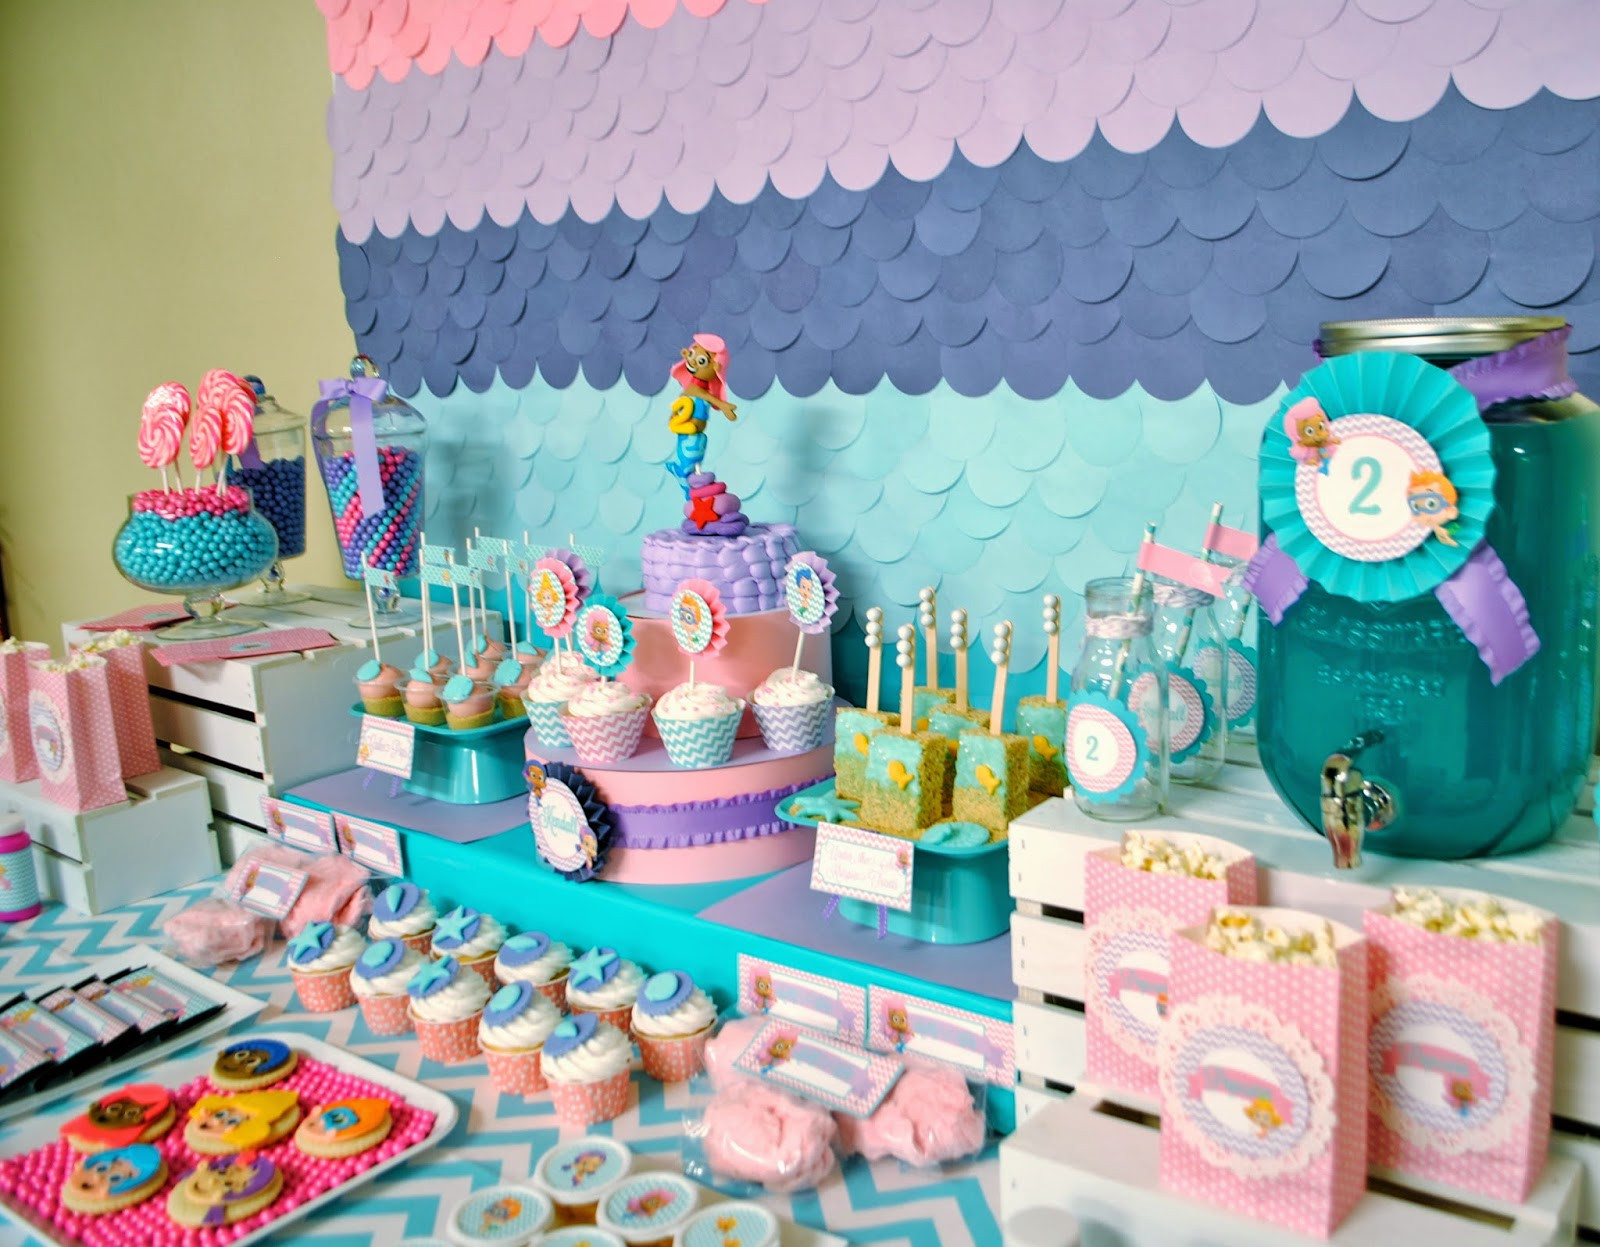 Bubble Guppies Birthday Party Supplies
 Karo s Fun Land Bubble Guppies 2nd Birthday Party